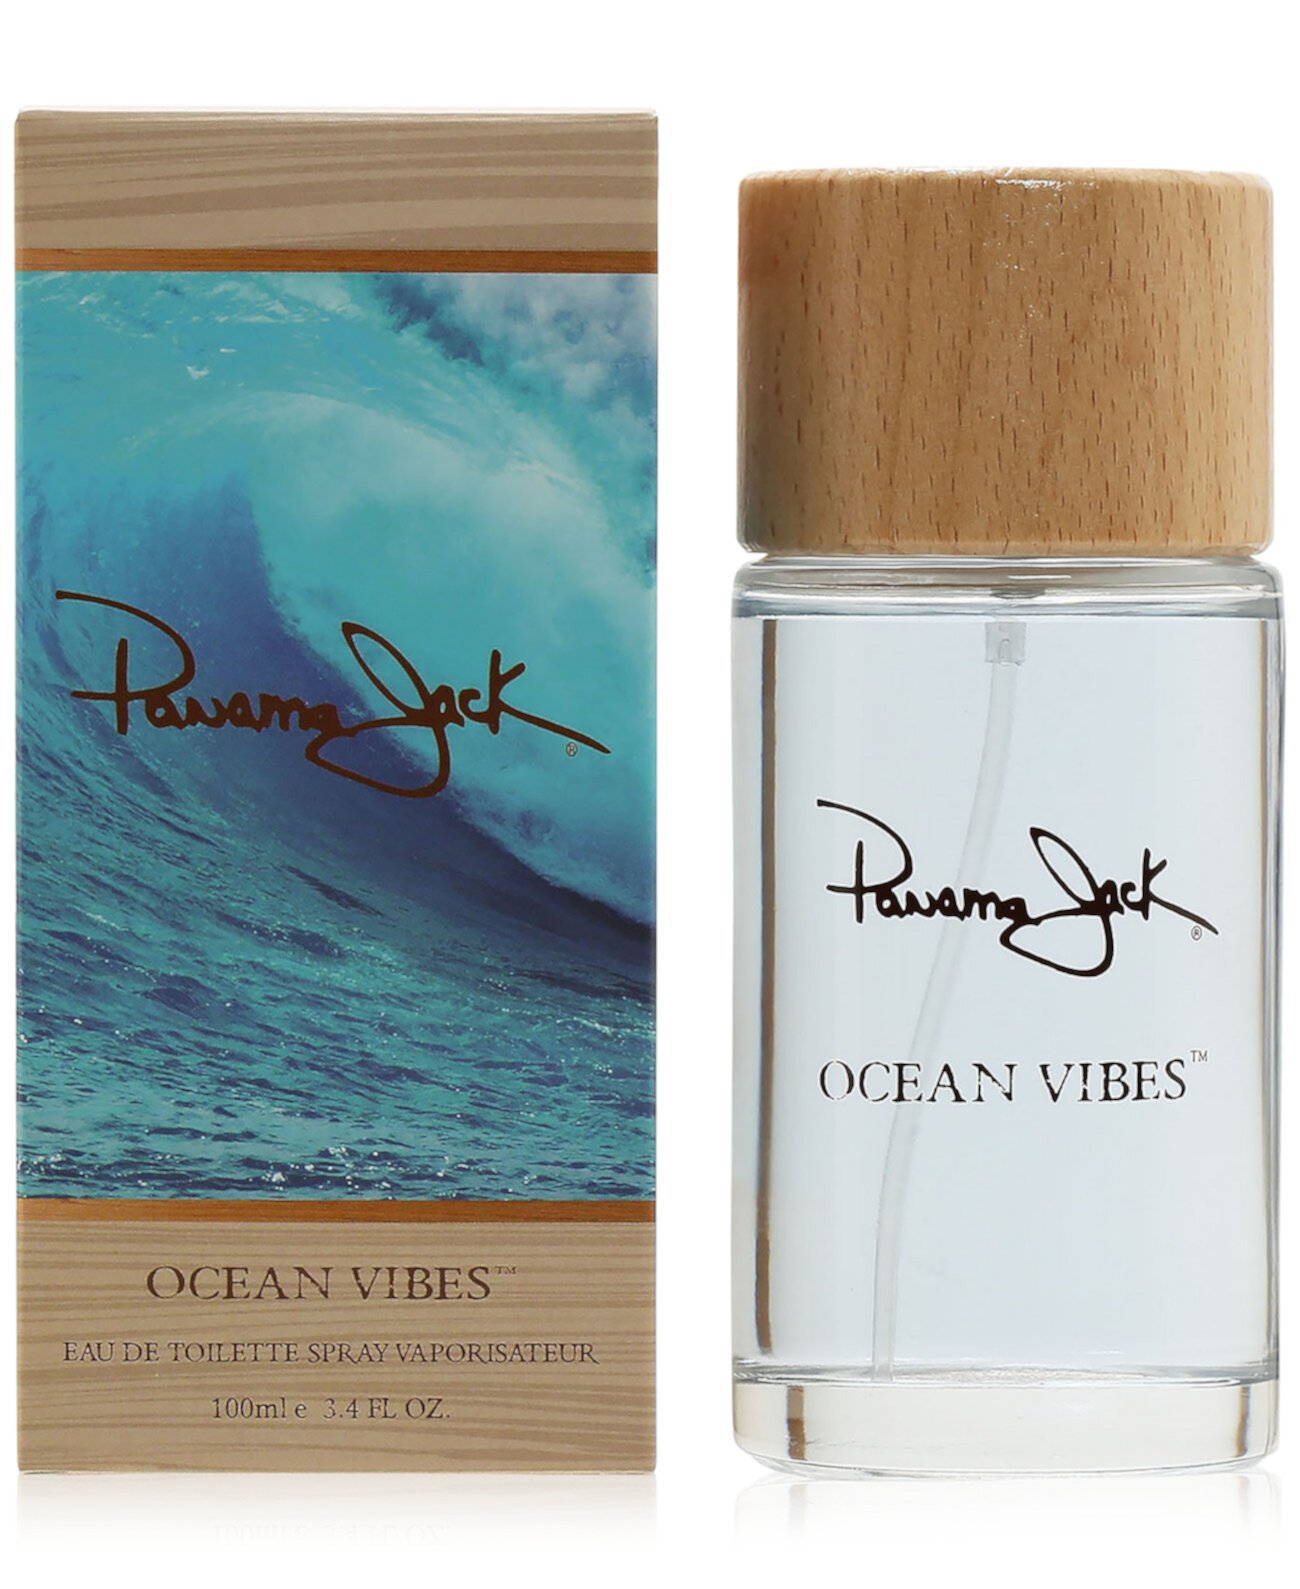 Ocean Vibes Eau de Toilette Spray, 3.4 oz. Panama Jack